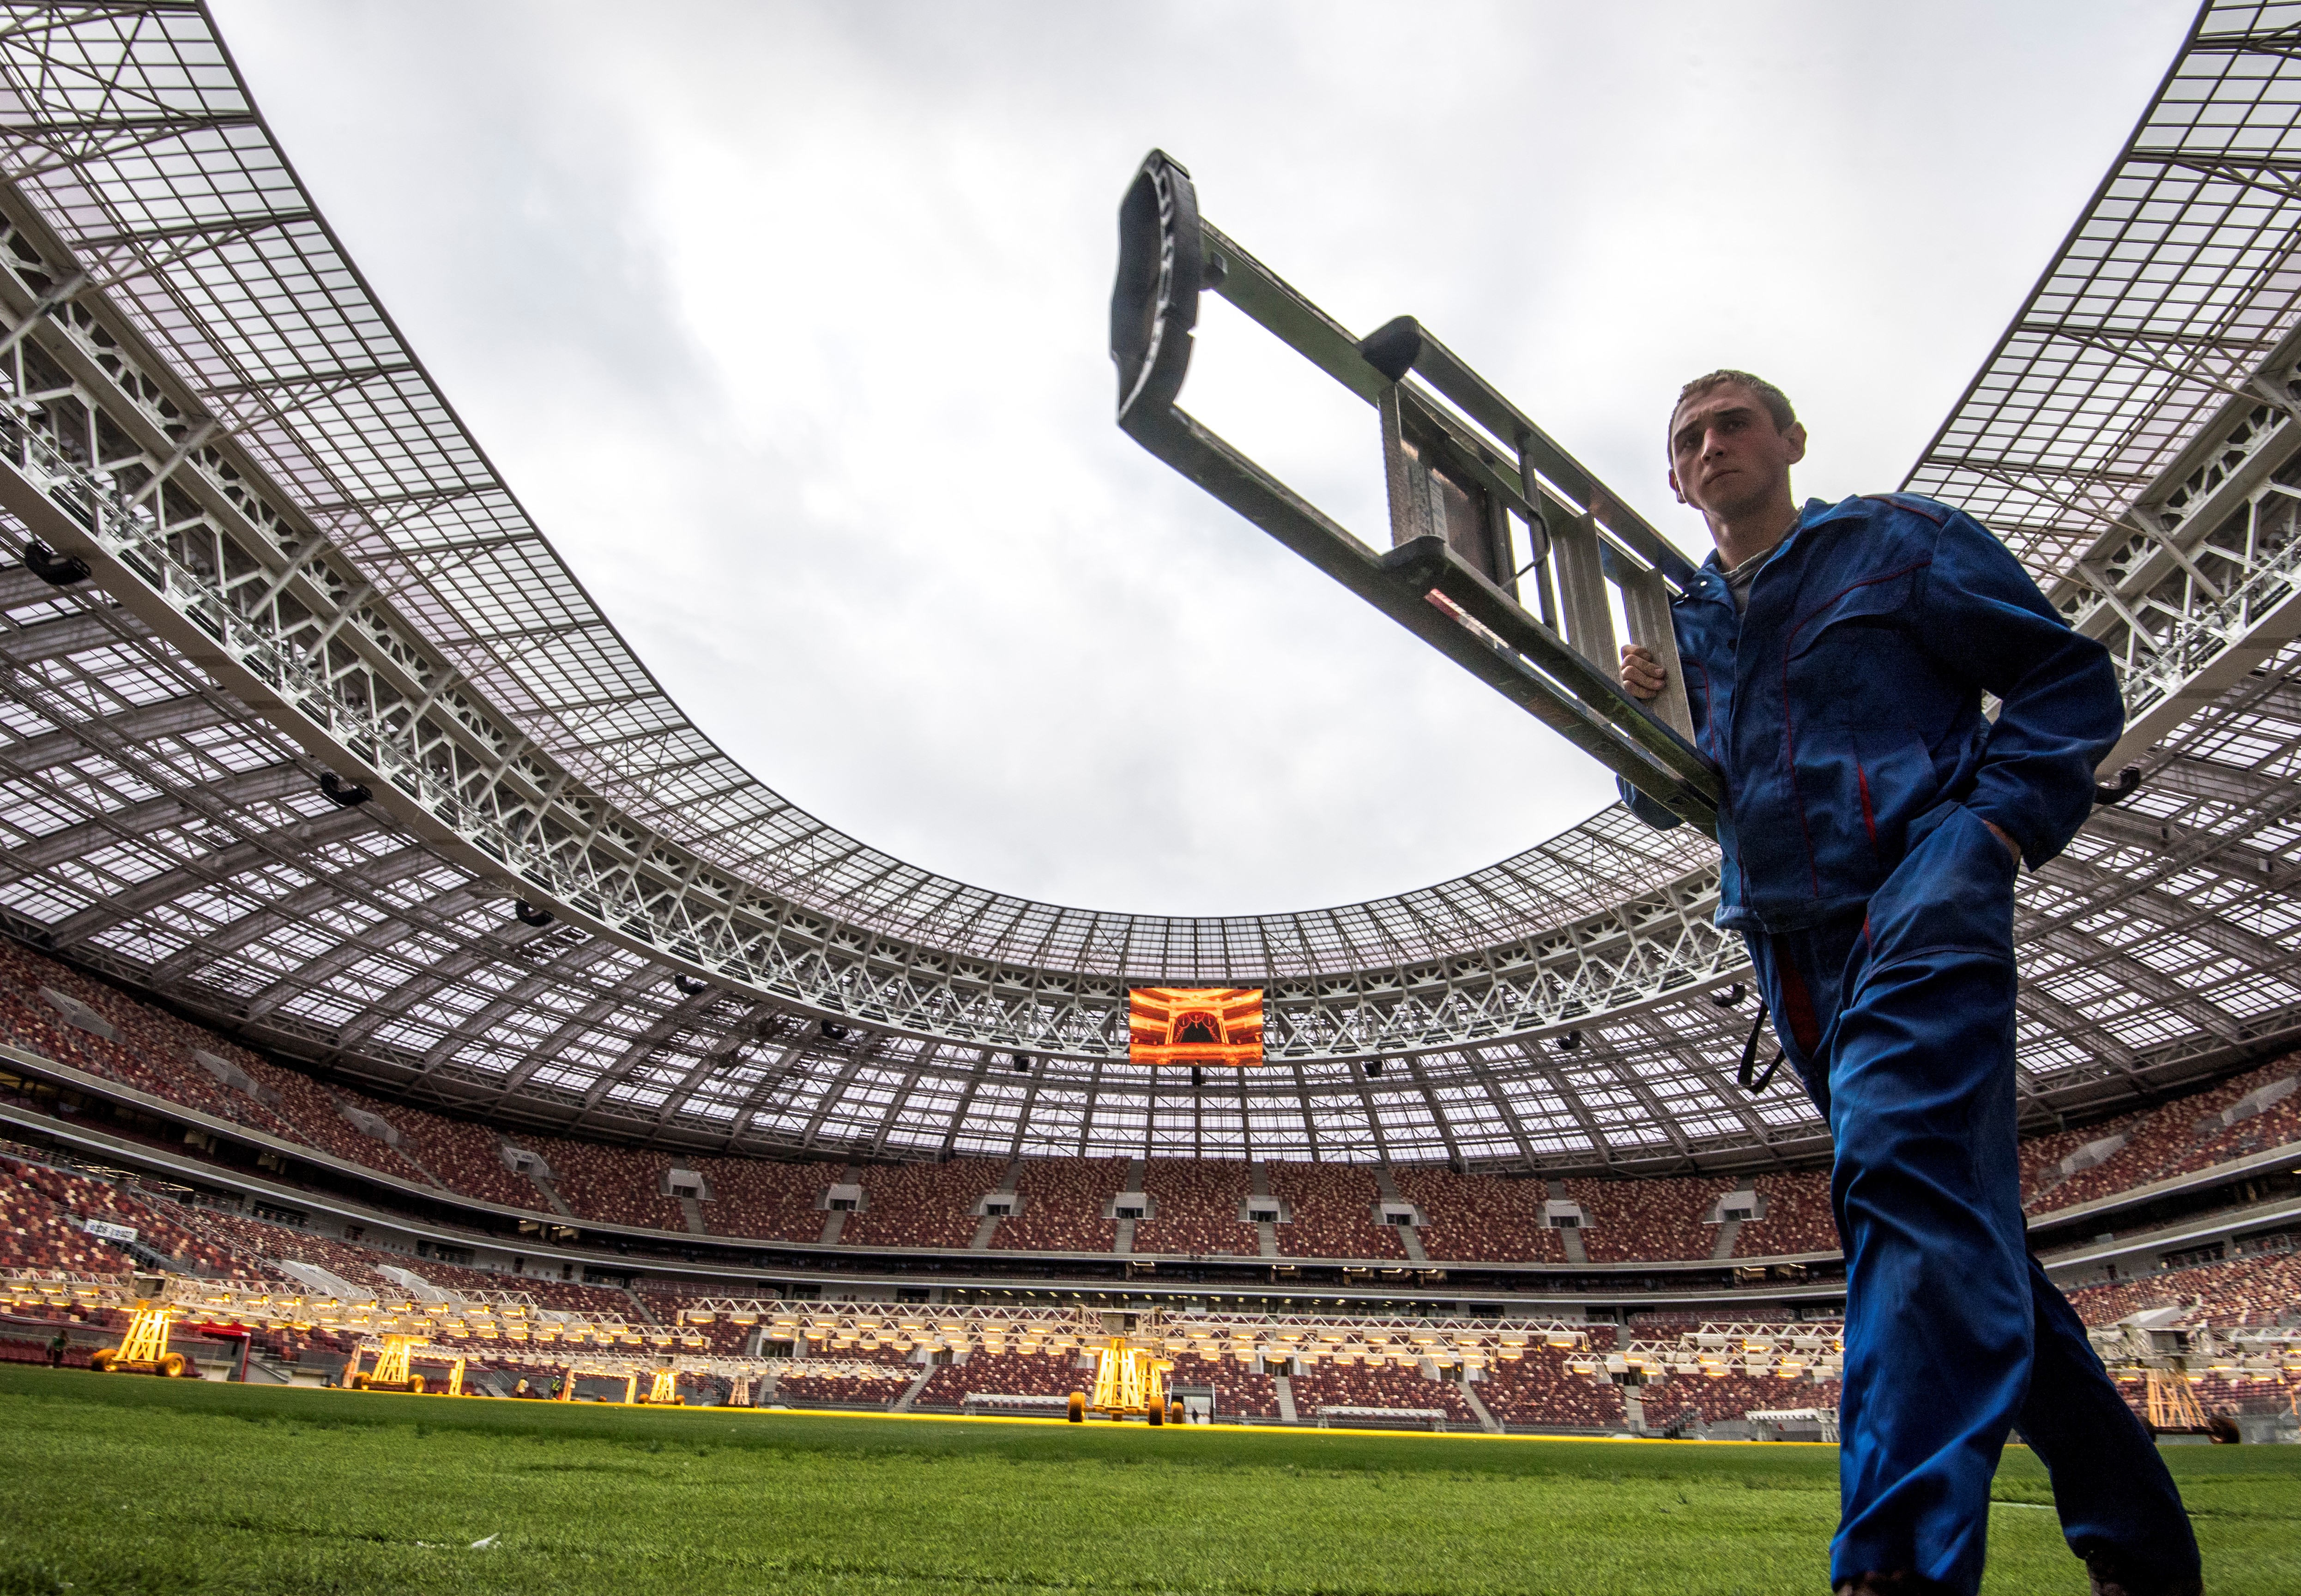 Az oroszok olcsóbban megépítették a 2018-as vébé fő stadionját, mint amennyit a magyar állam a Puskásra költ